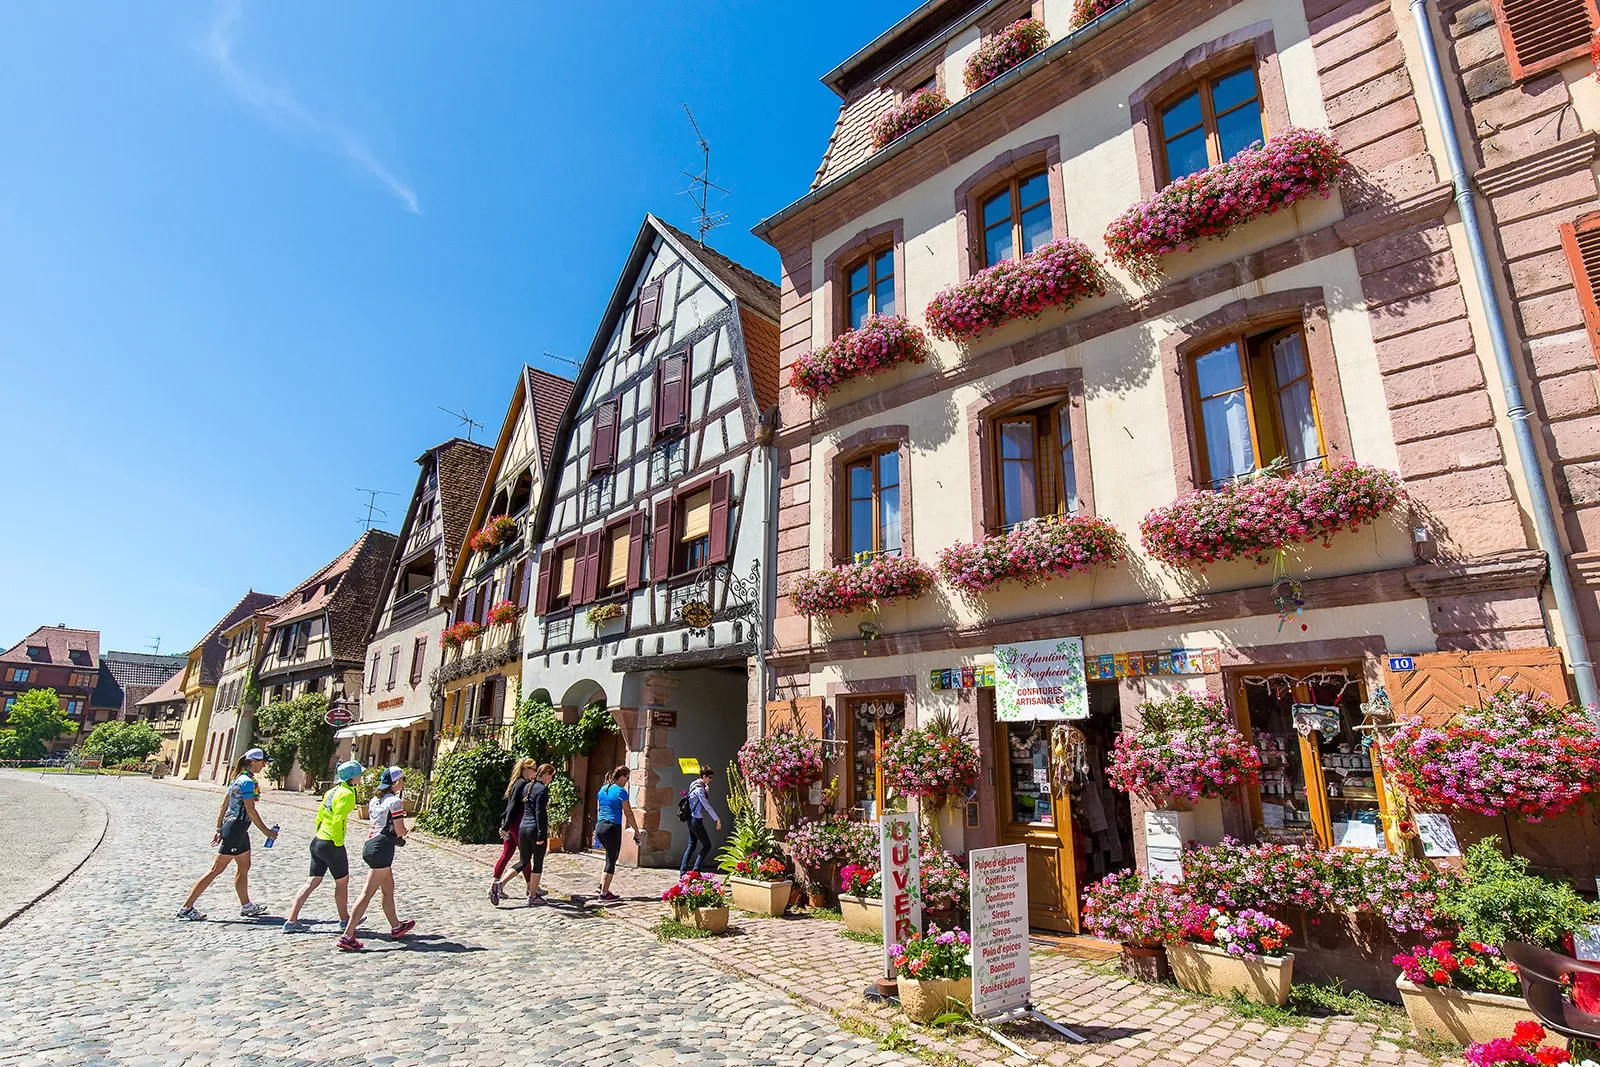 Backroads Guest in Cute Town in Alsace